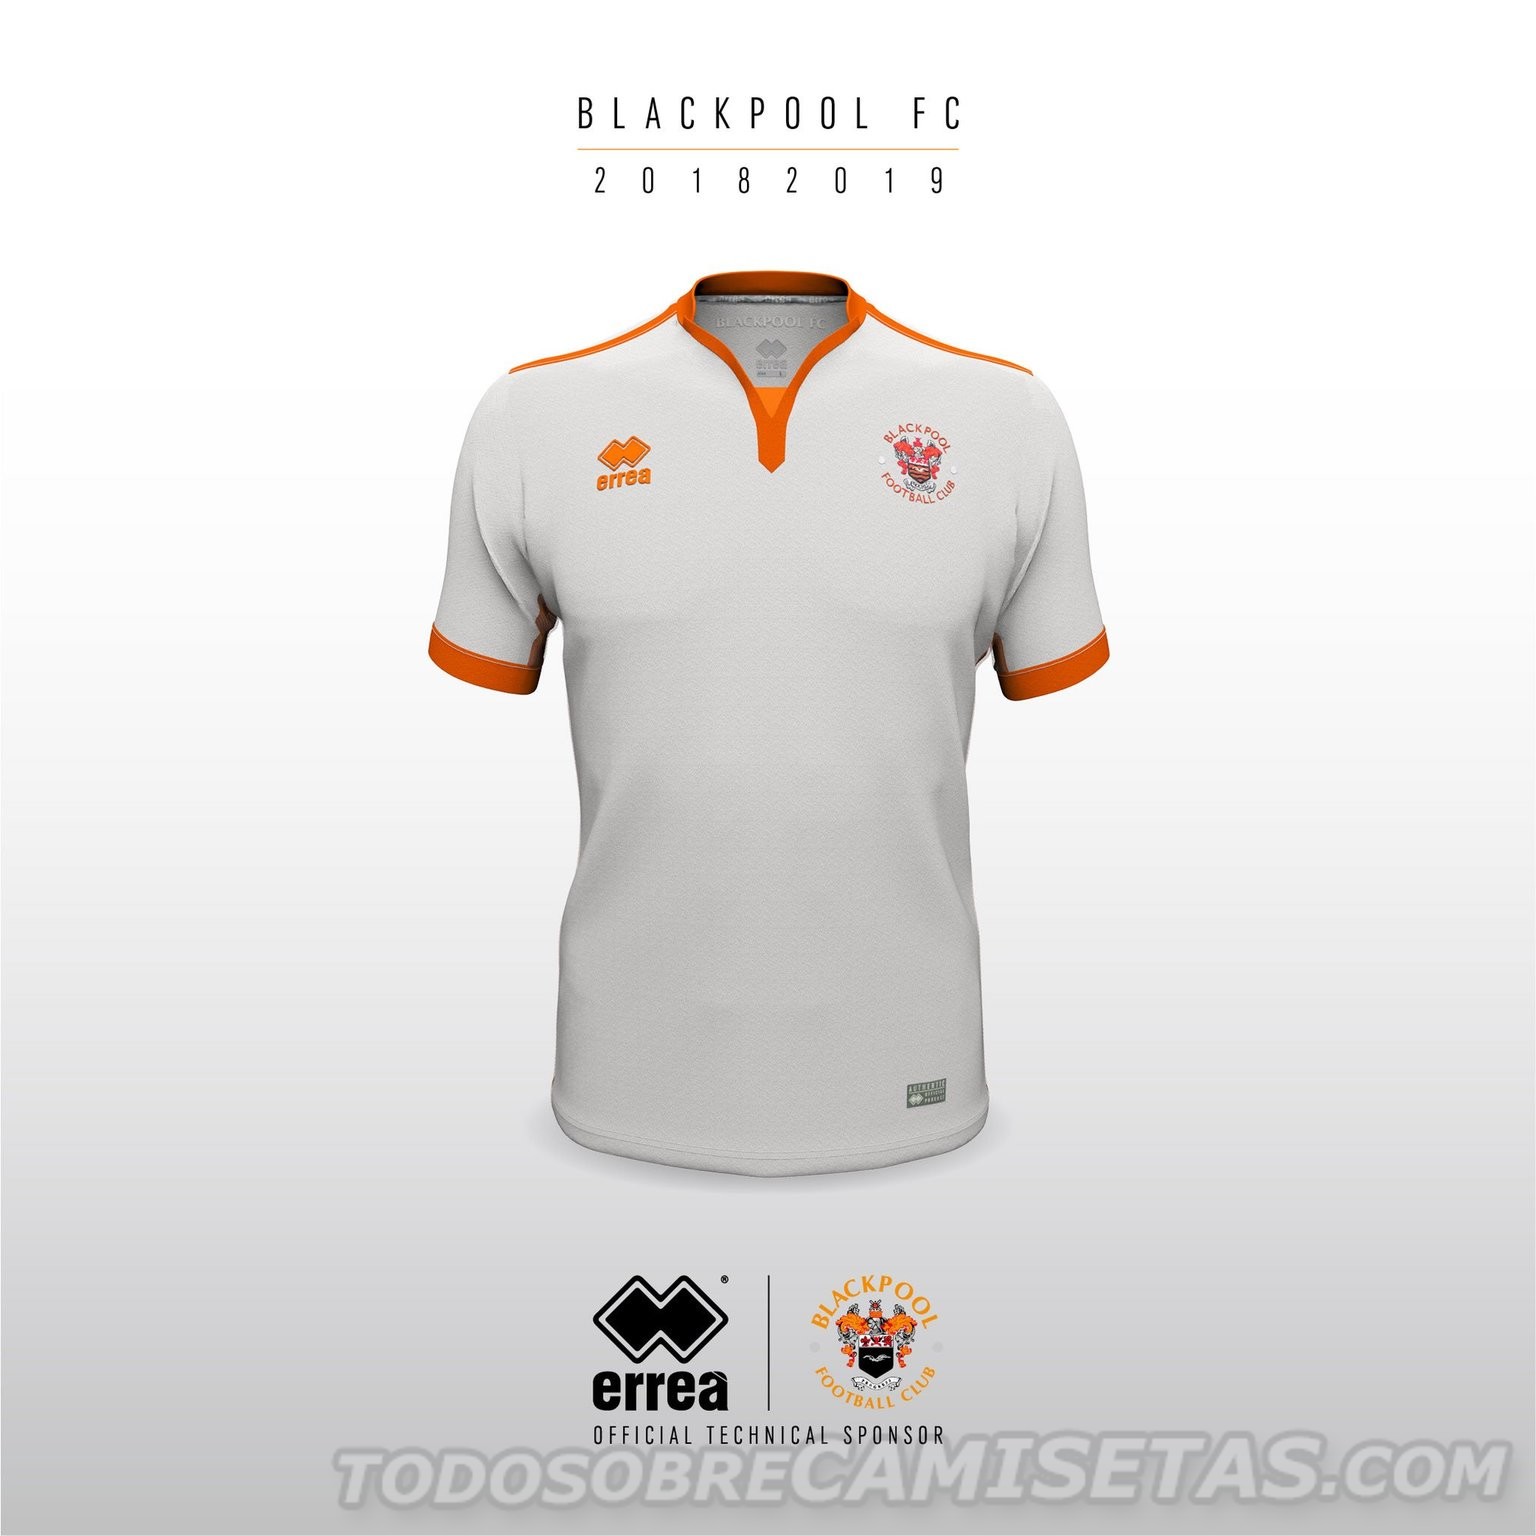 Blackpool Errea 2018-19 Kits